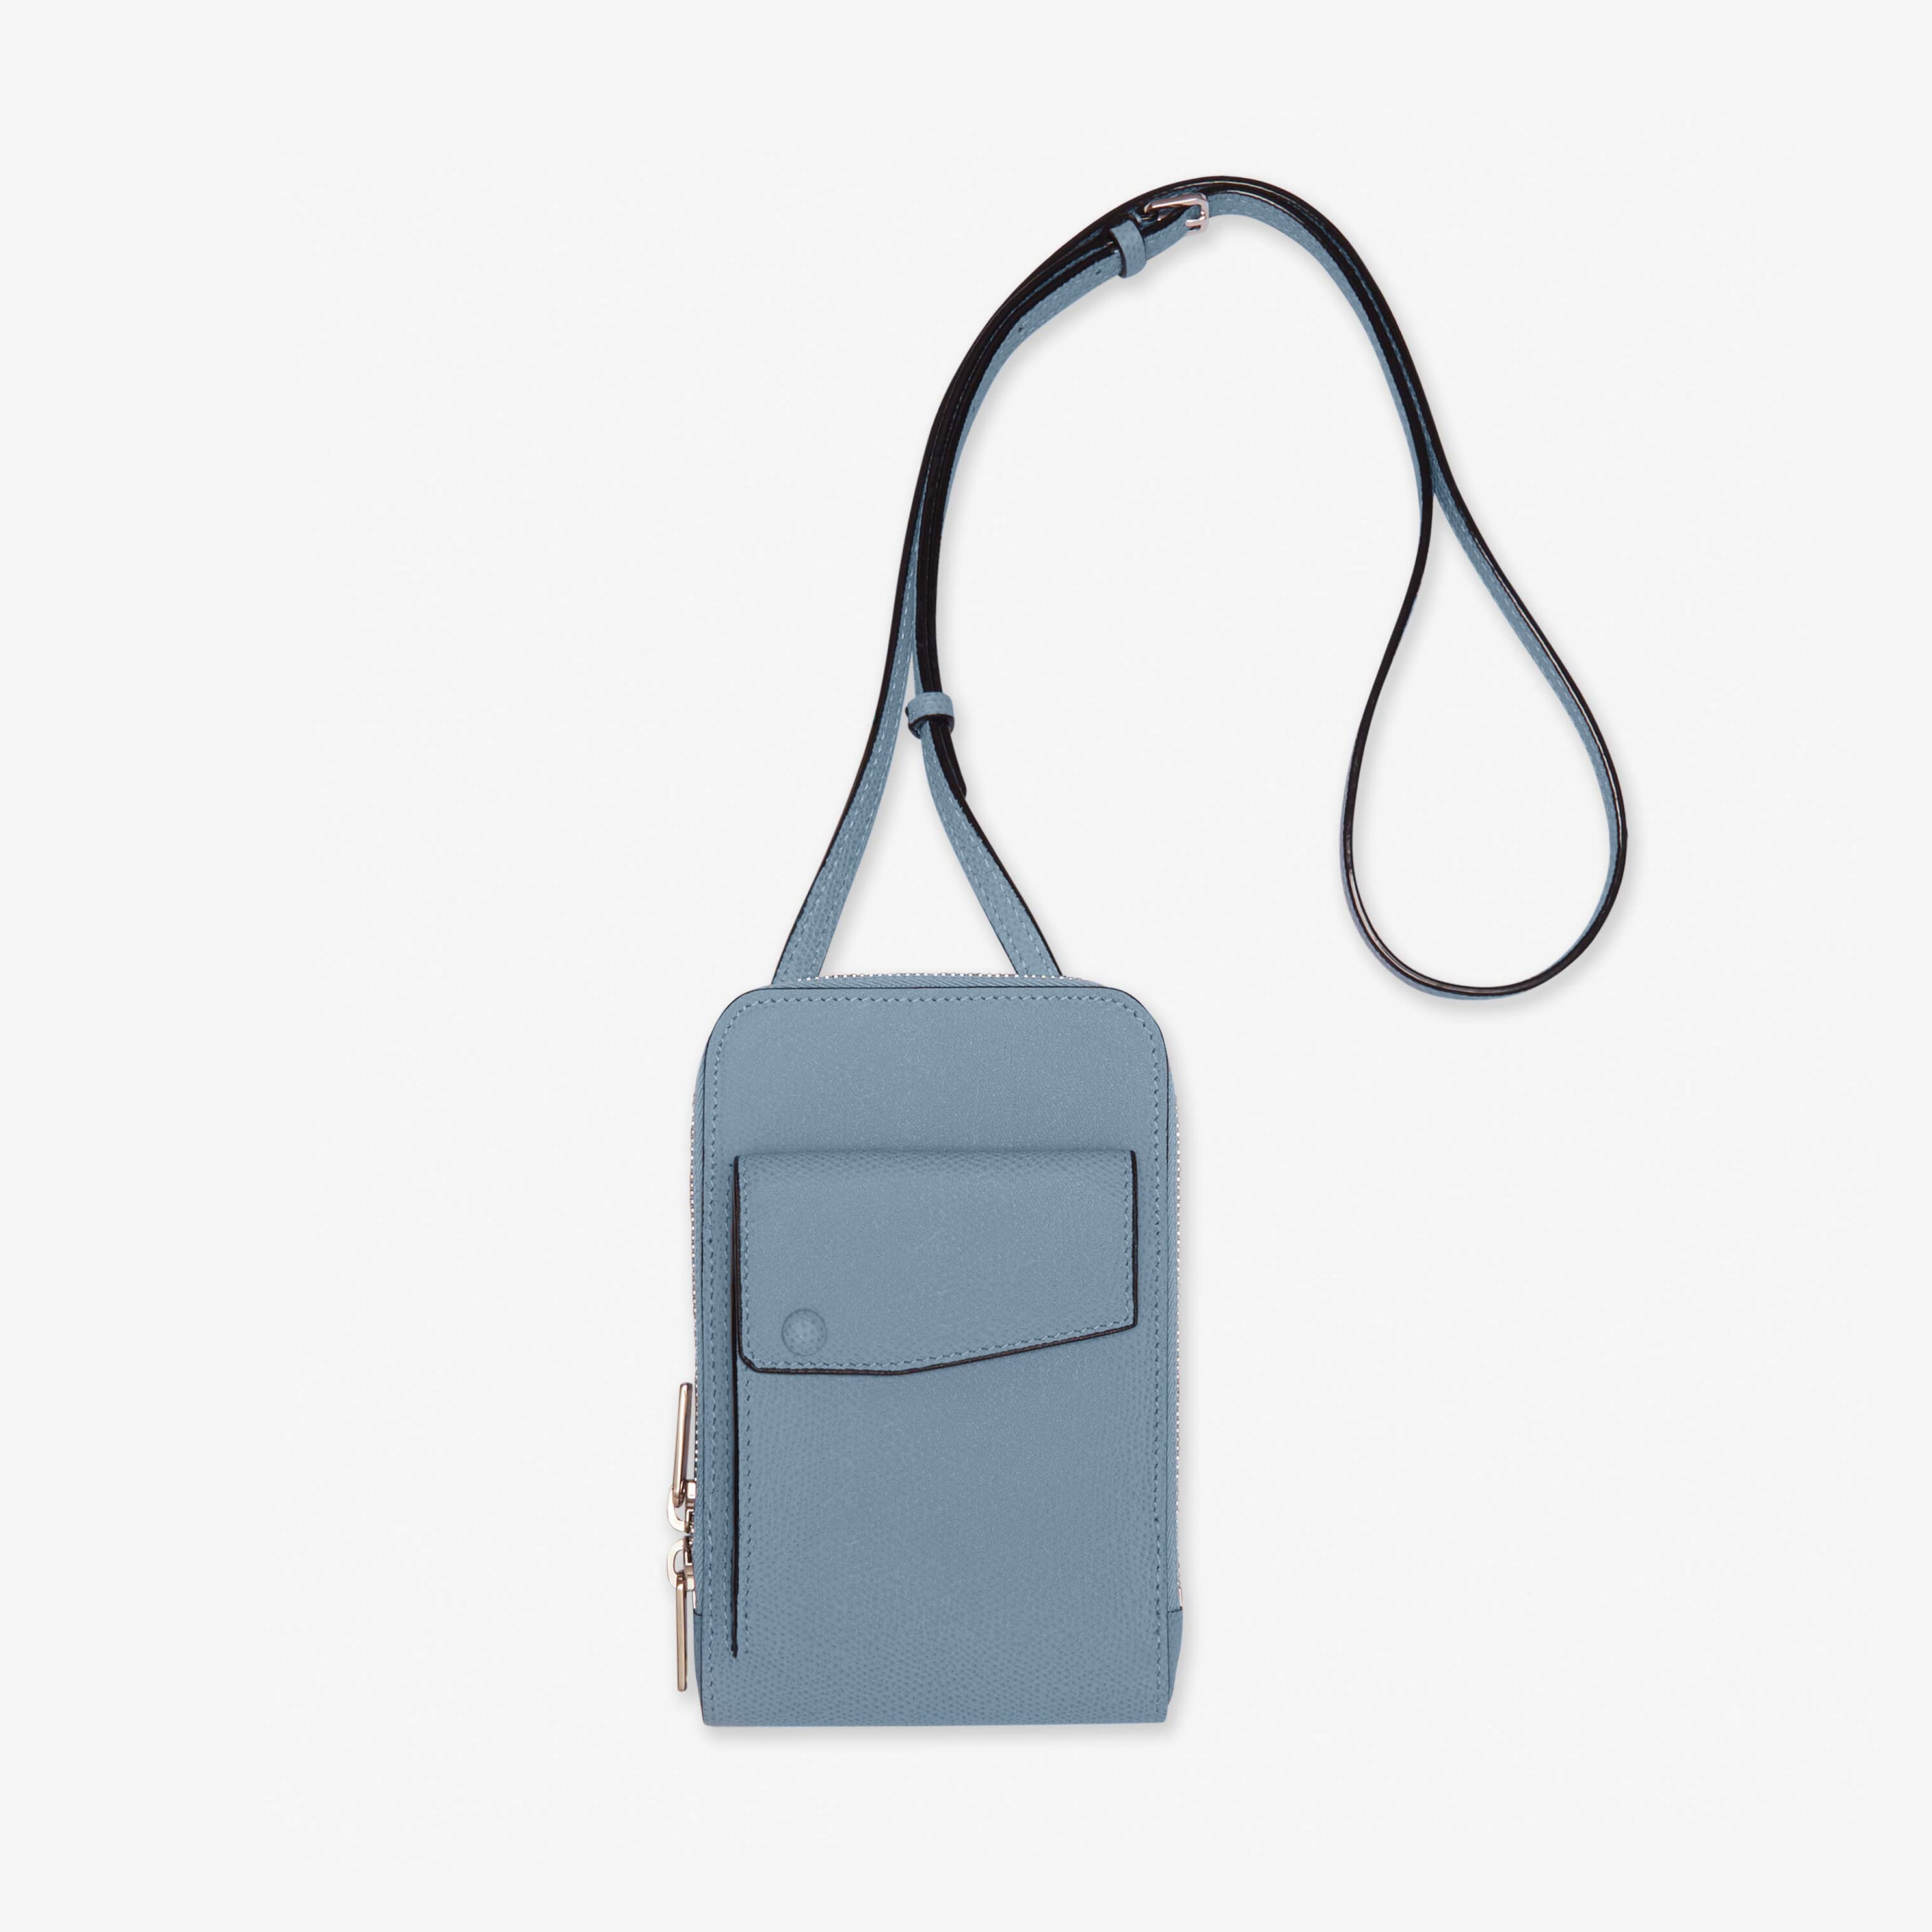 Brown Mobile Phone Bag Crossbody Bag Cash Wallet Rectangular Shoulder Bag  For Women,the novel style wedding package, designer messenger wallet, novel